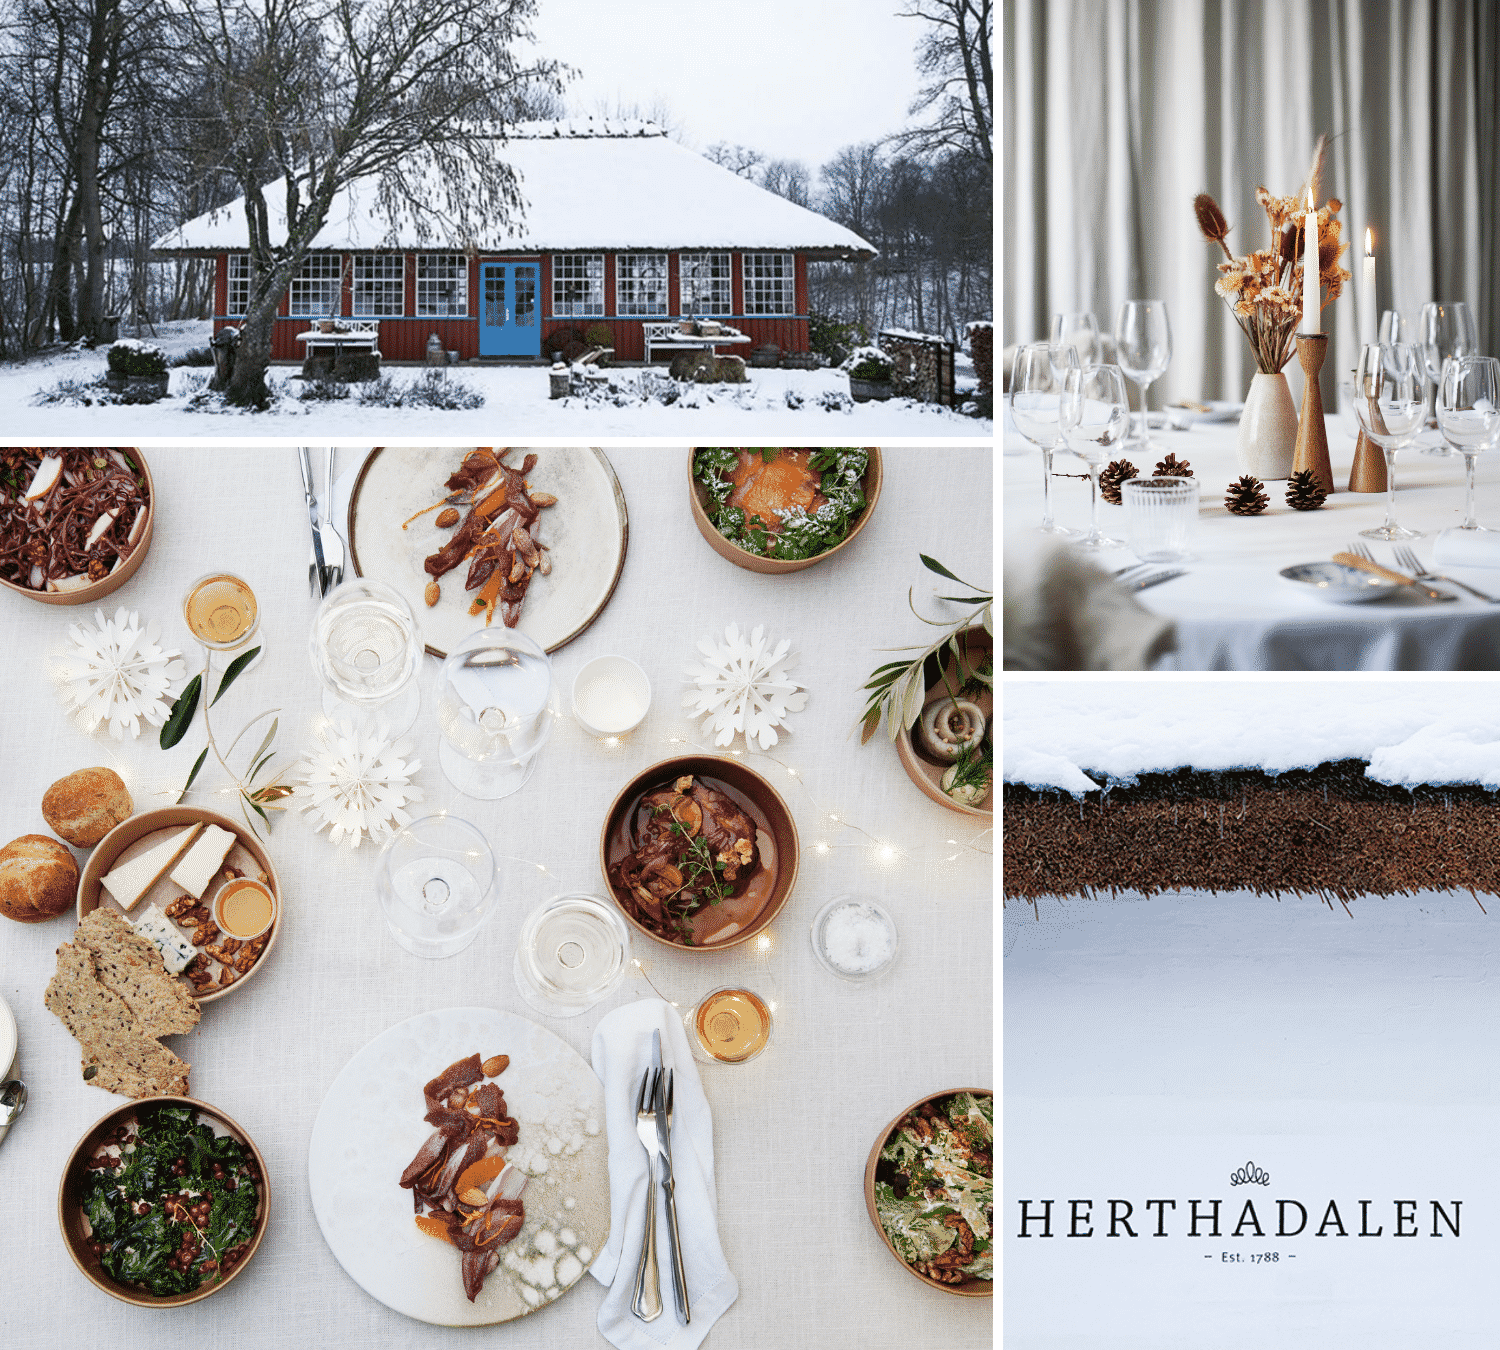 Restaurant Herthadalen-økologi-lokale råvarer-selskaber-sommerfrokost i skoven-Lejre-Fjordlandet-hvid jul lysfest